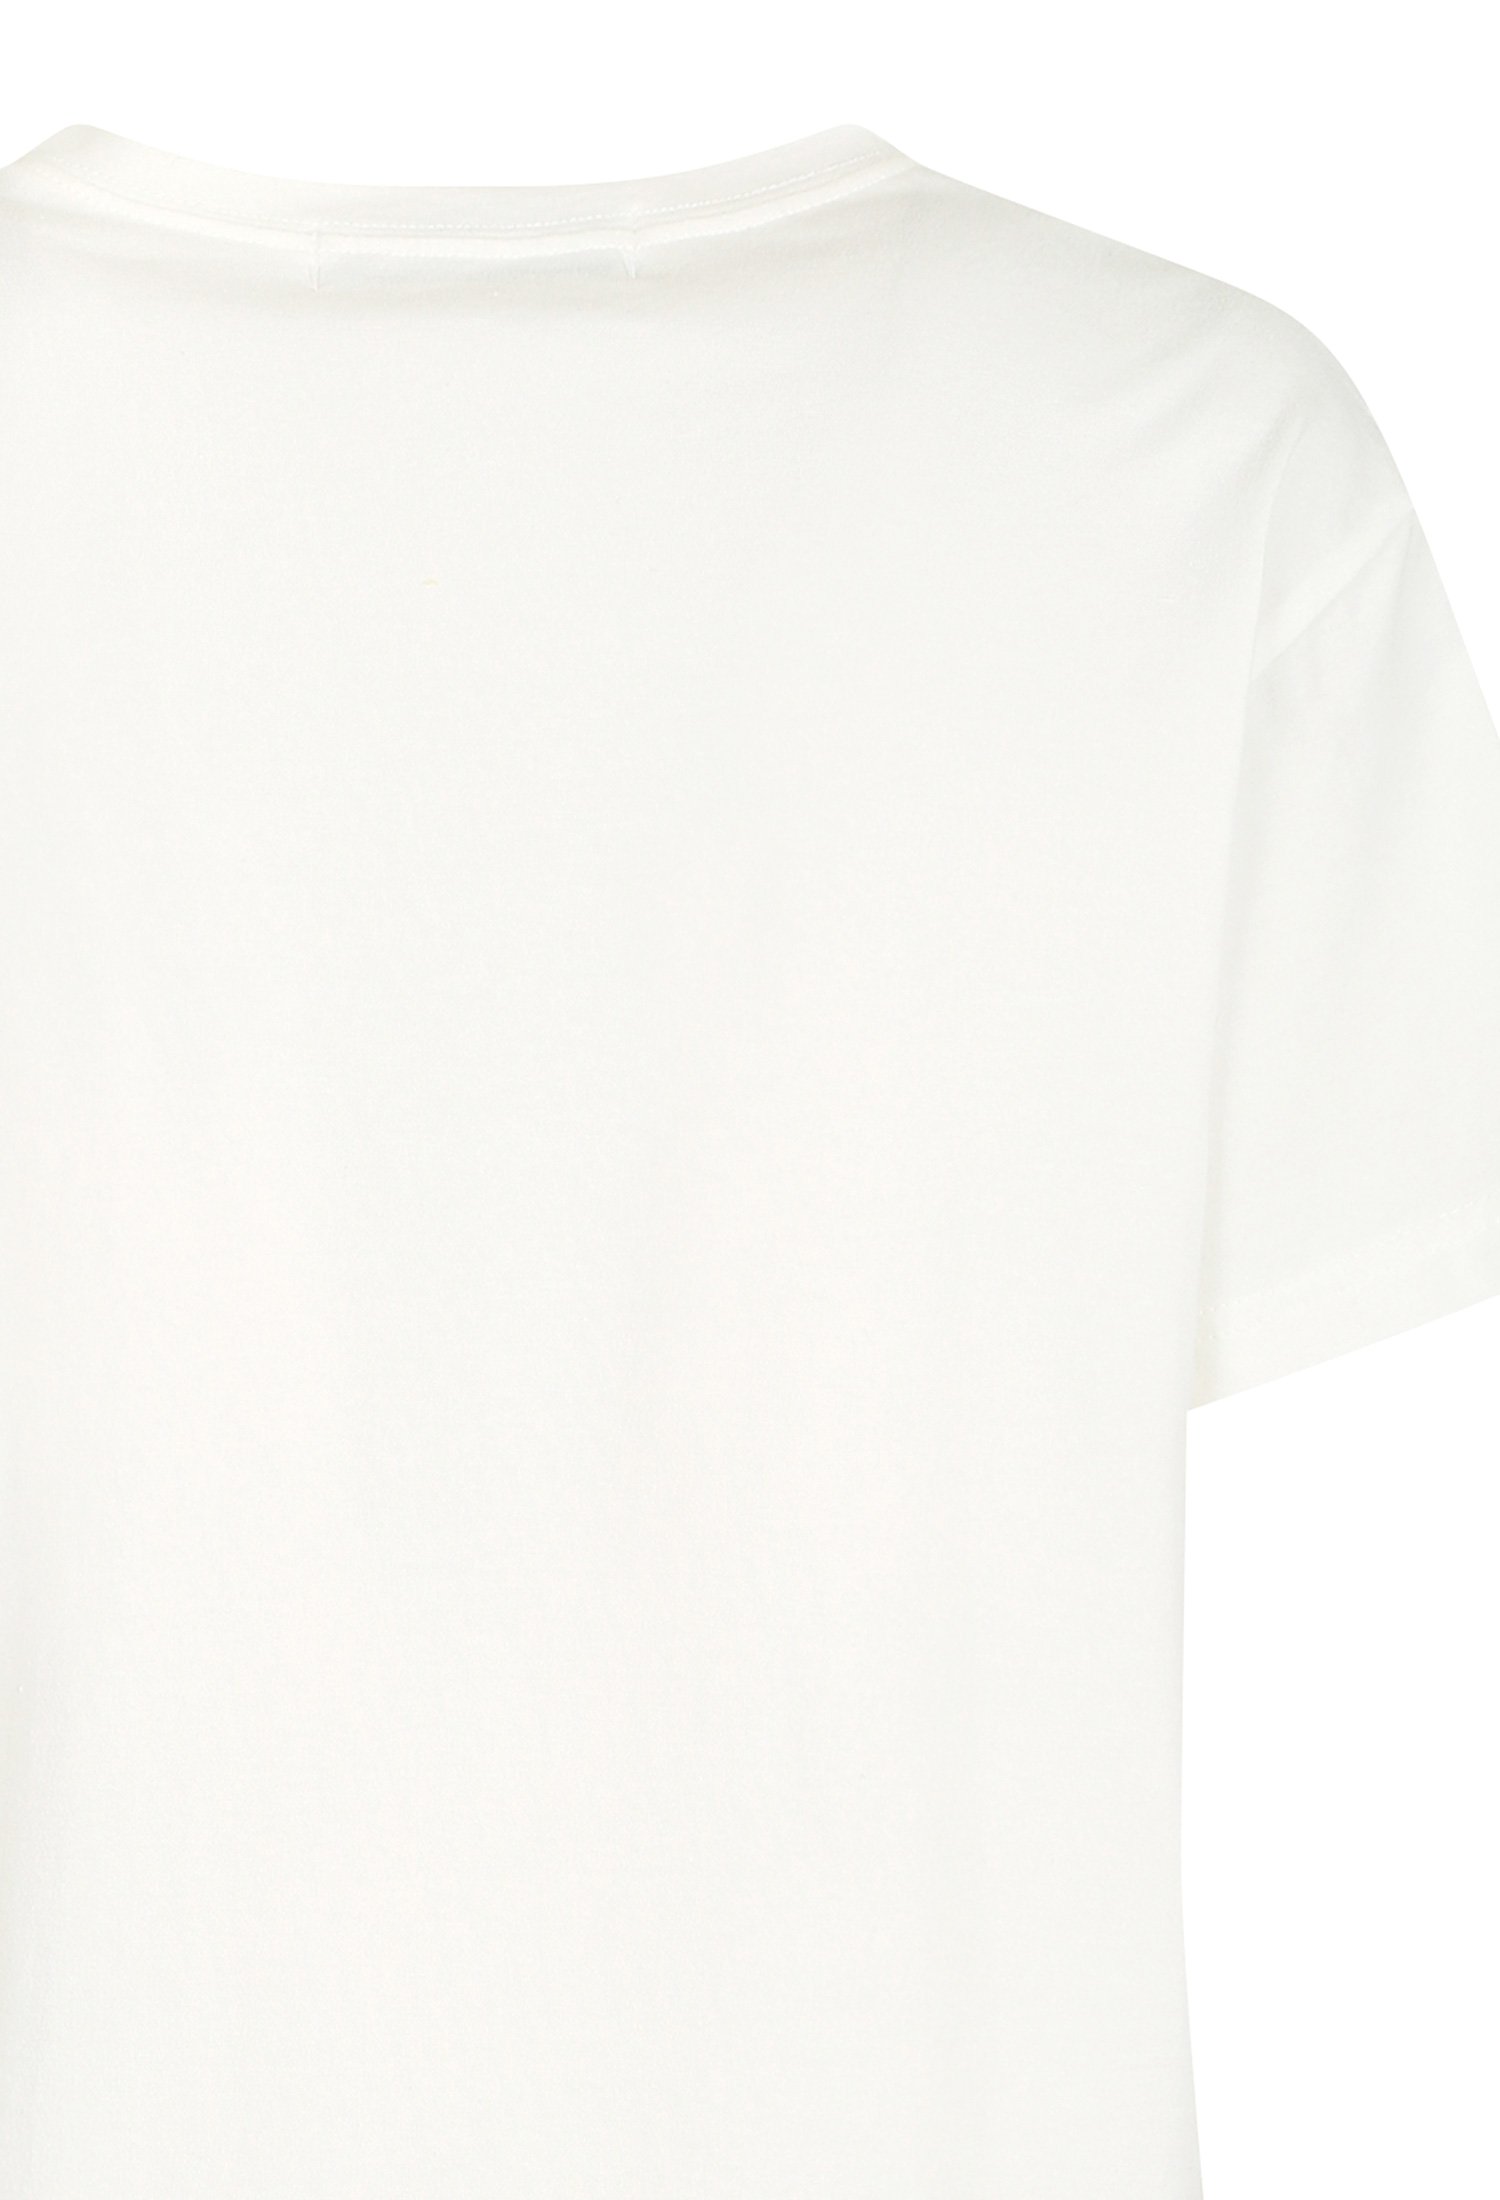 하프 슬리브 프린트 티셔츠 (WHITE)